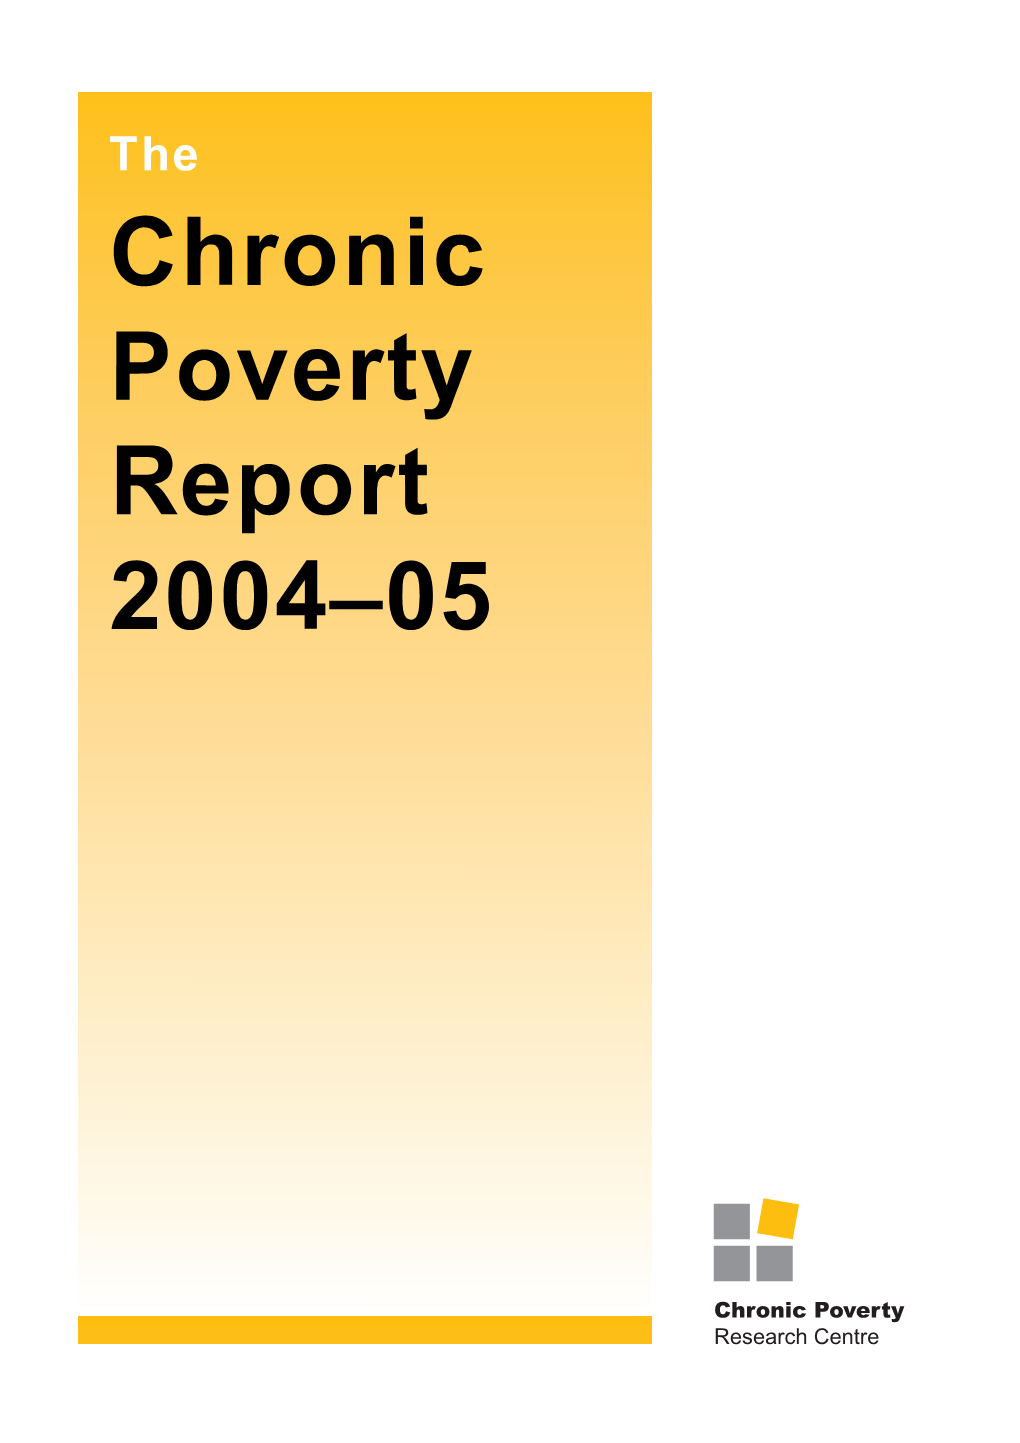 Chronic Poverty Report 2004-05